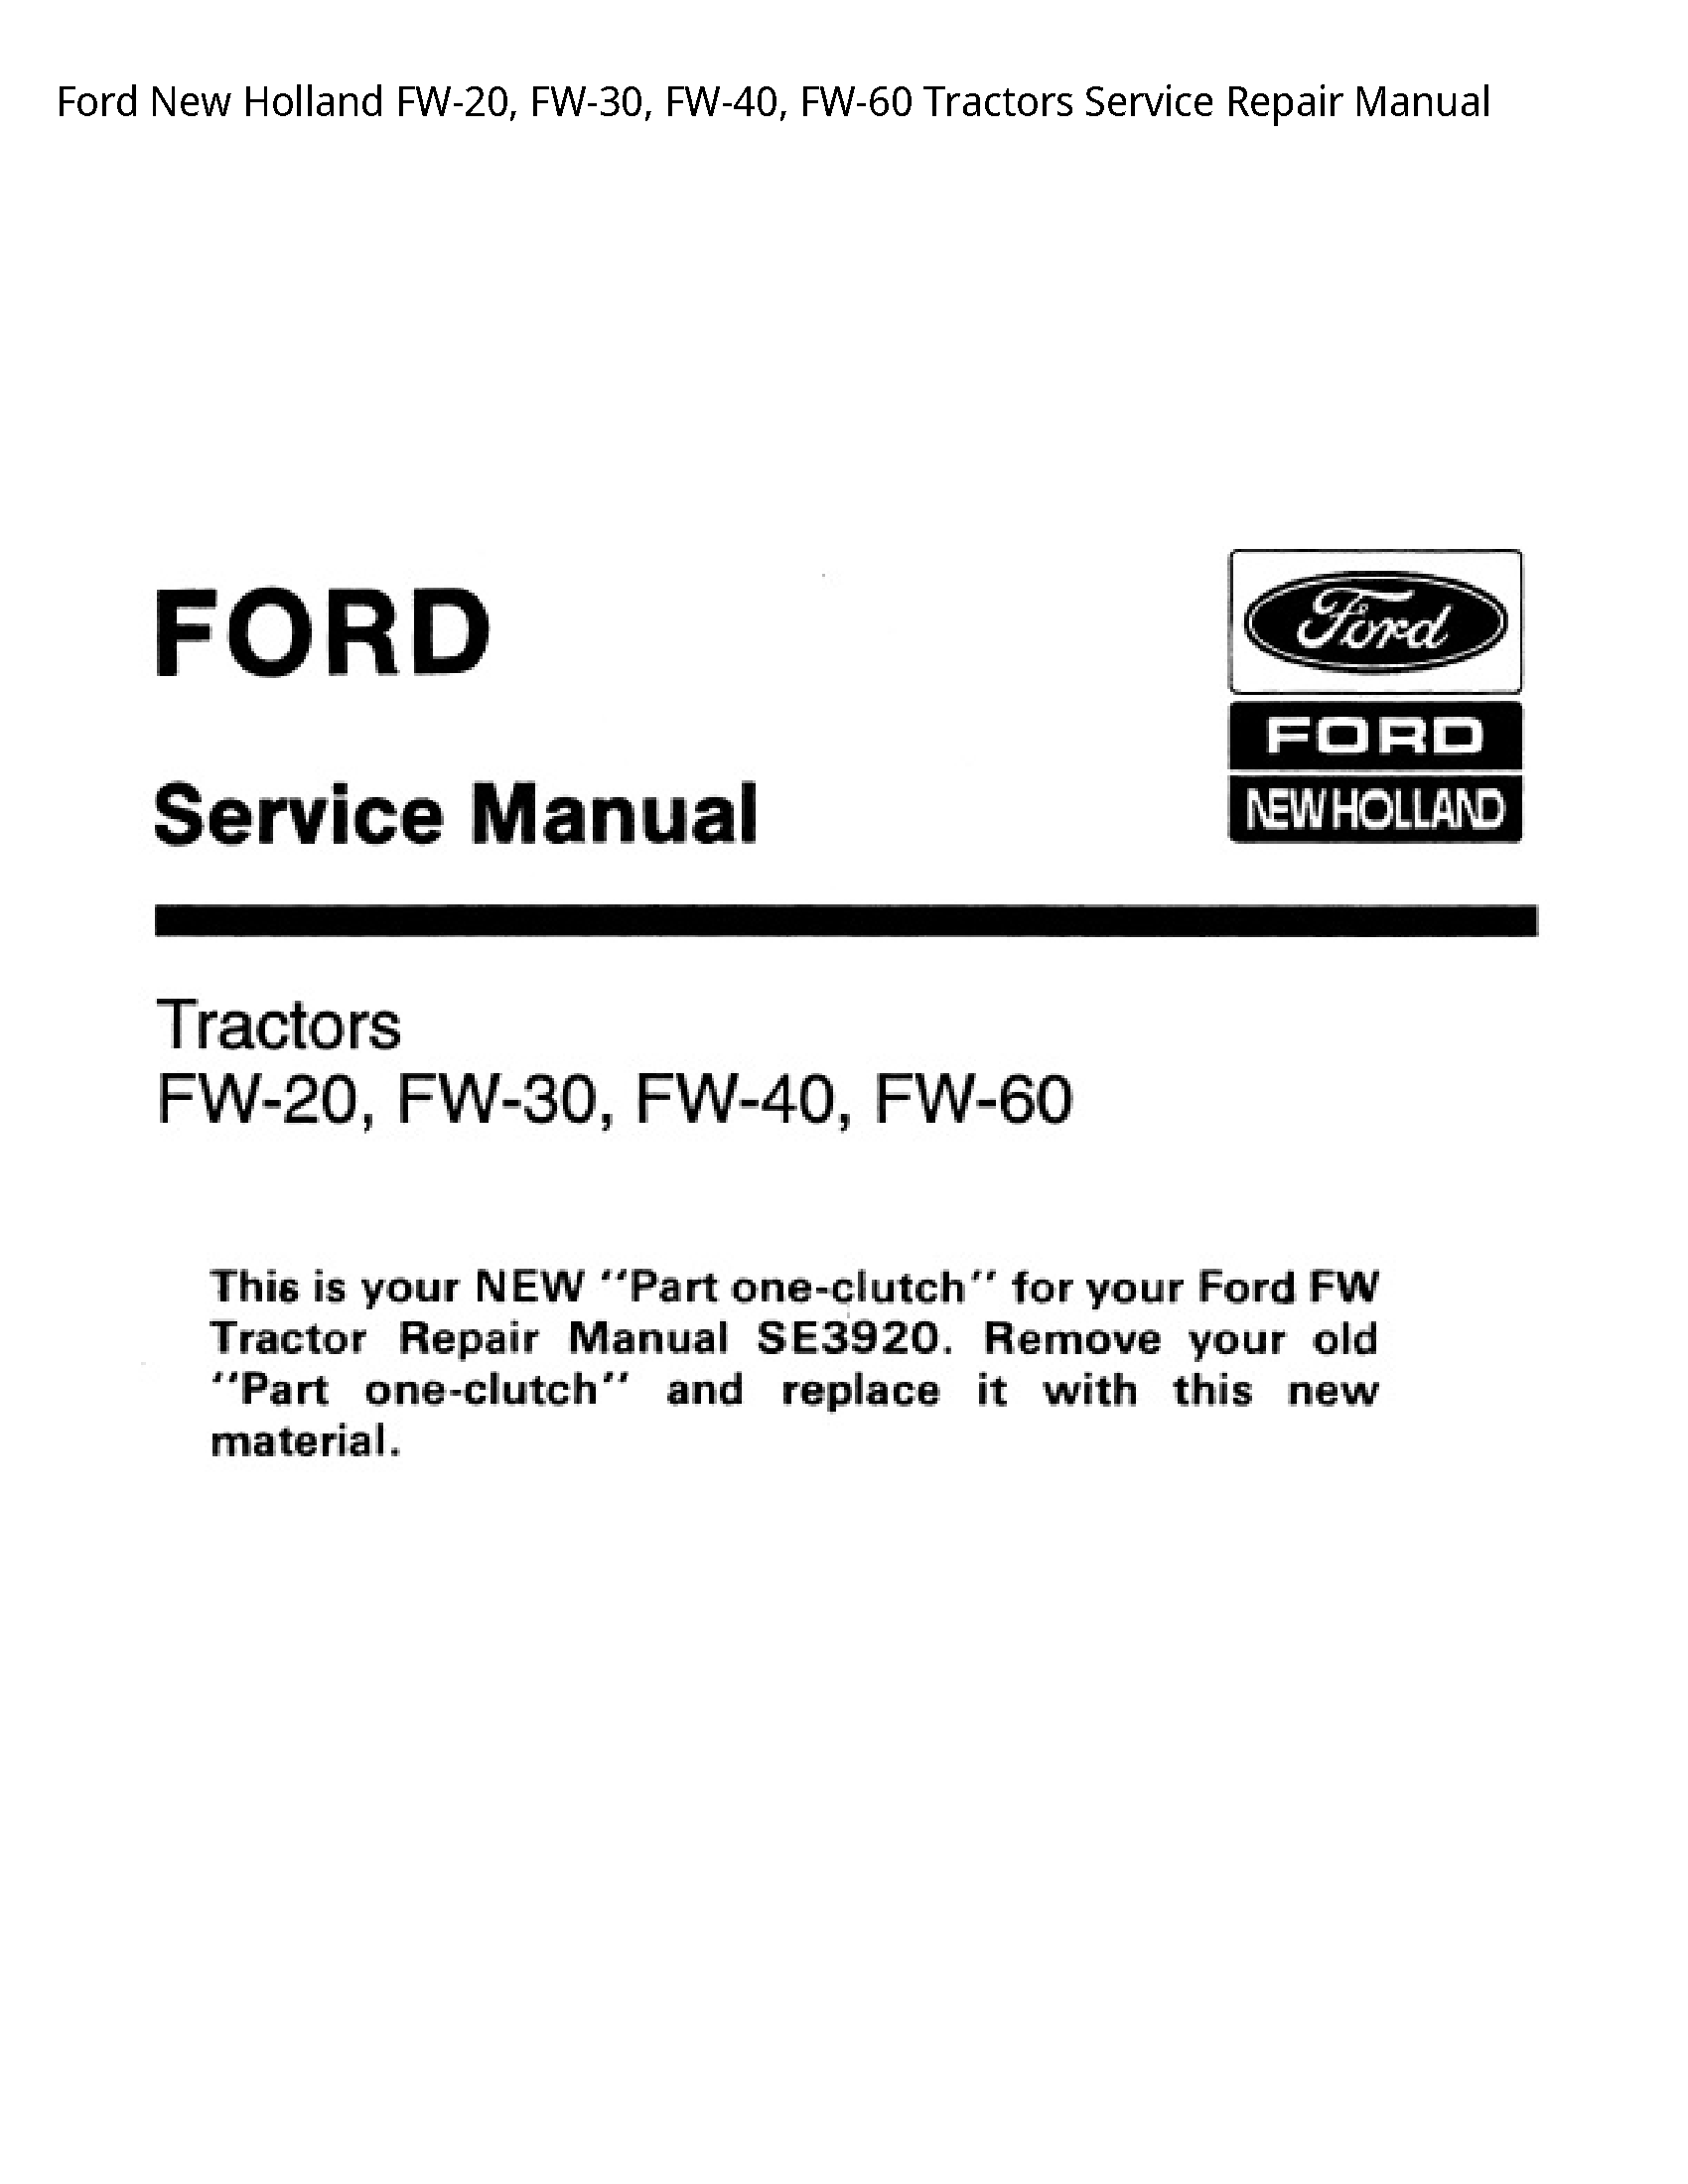  FW-20 Tractors manual